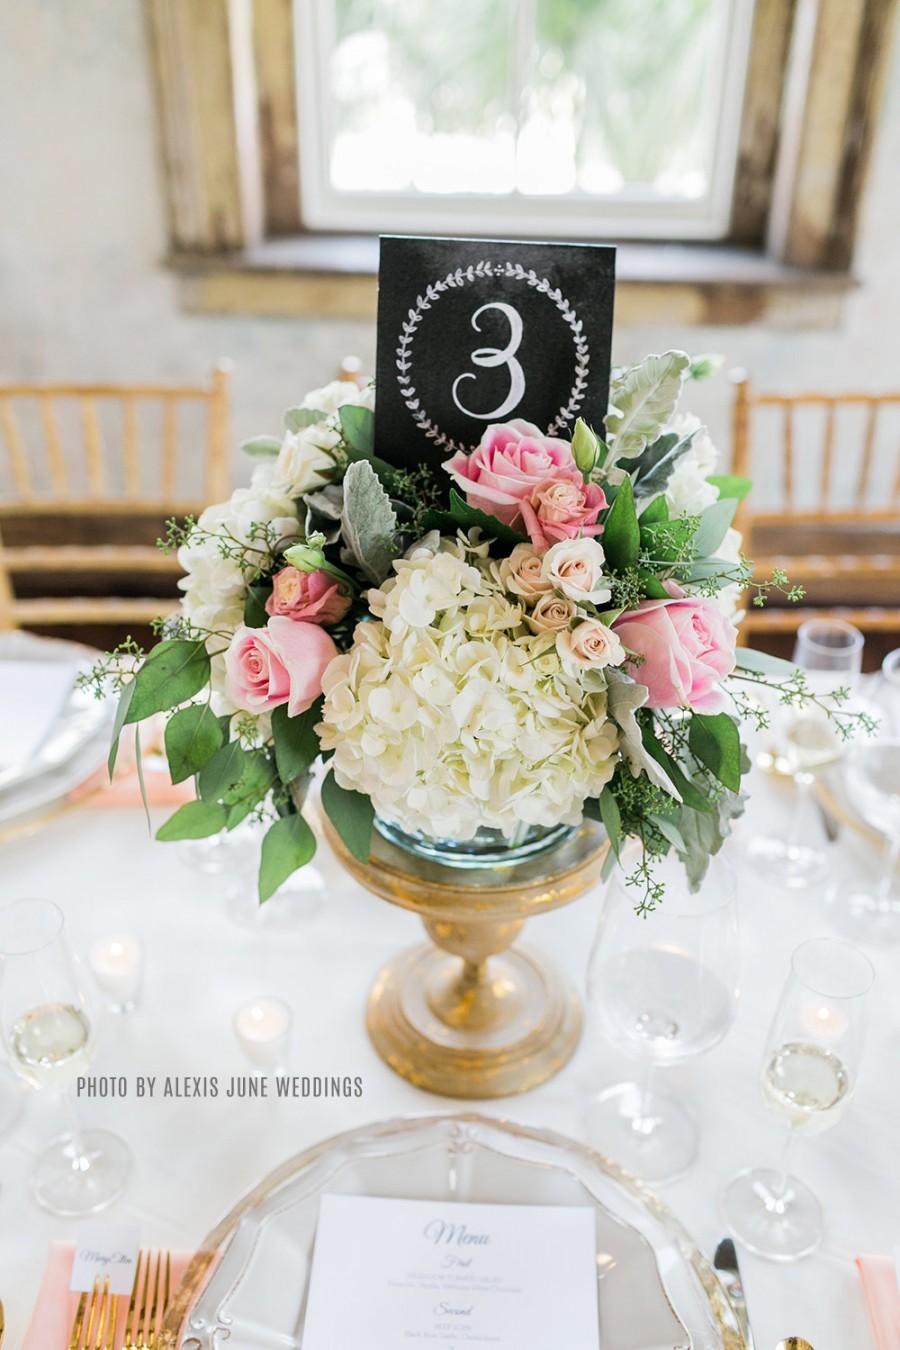 Mariage - Wedding Table Numbers - Vintage Wedding Table Numbers - Tented Table Numbers- Chalkboard Table Numbers